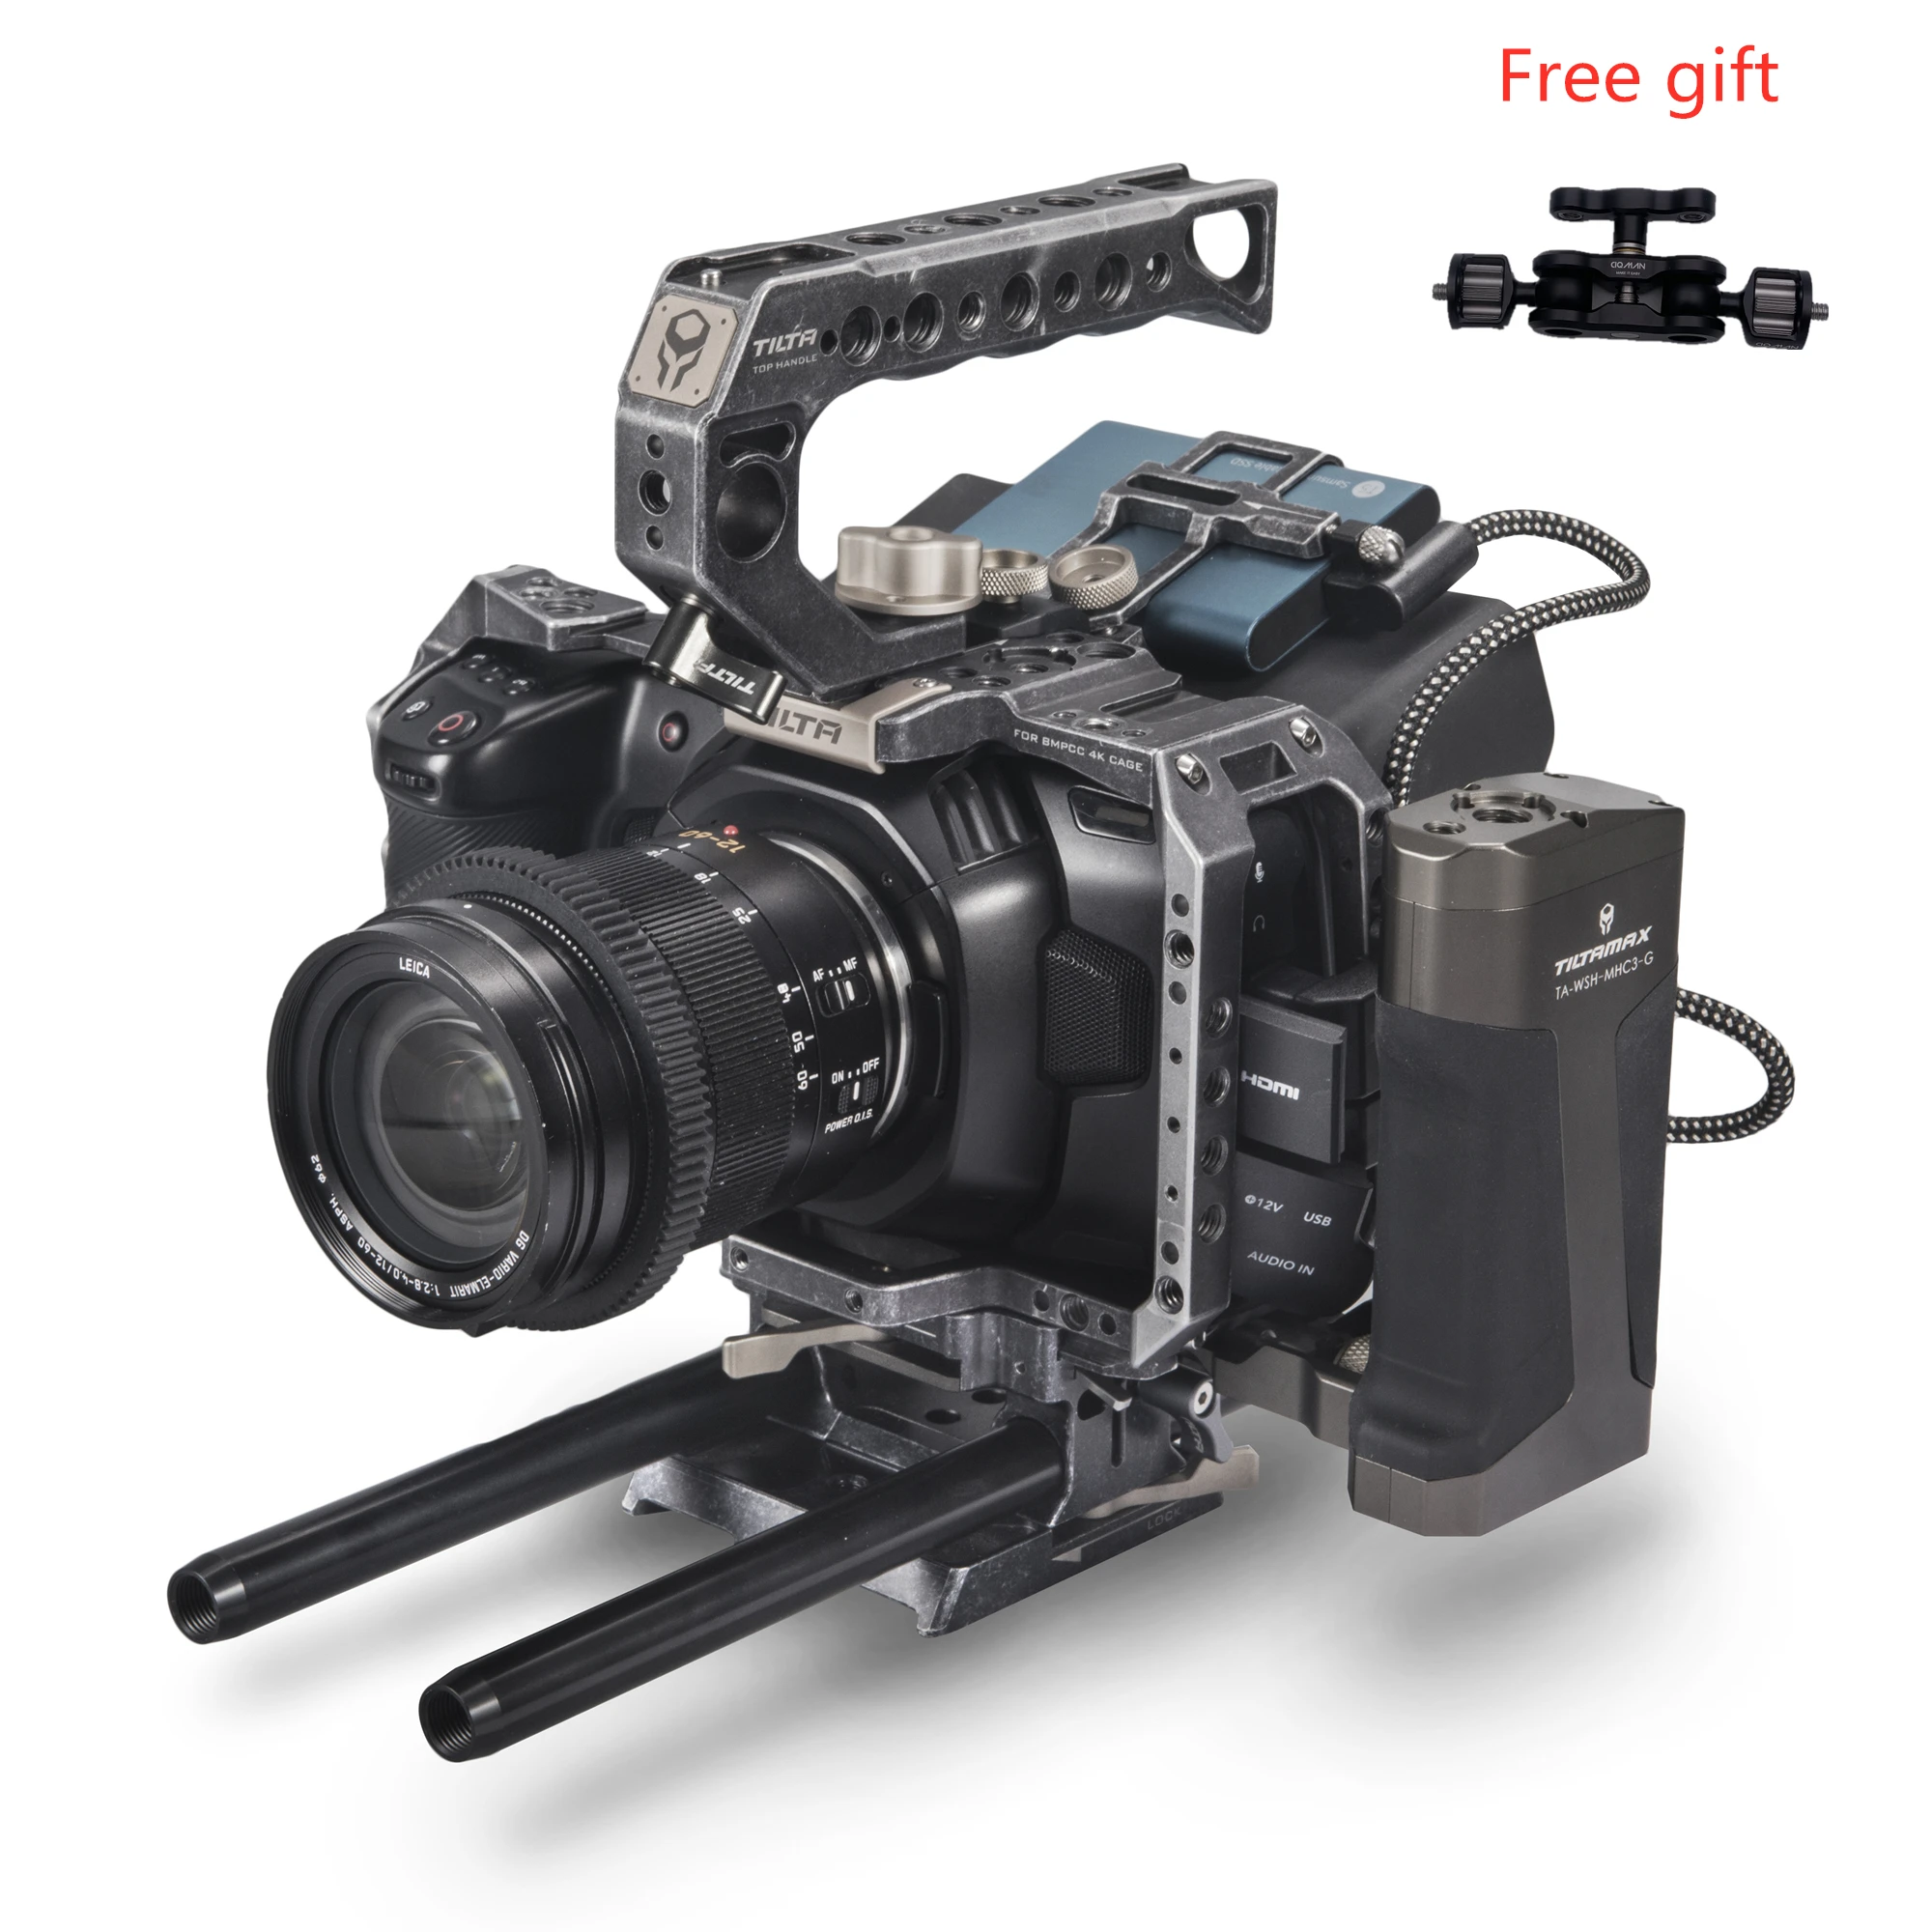 テレビ/映像機器 その他 TILTA BMPCC 4K Camera cage/case Blackmagic Pocket Cinema Camera 4K TA-T01-A  Tactical Grey KIT for Blackmagic Cinema Camera